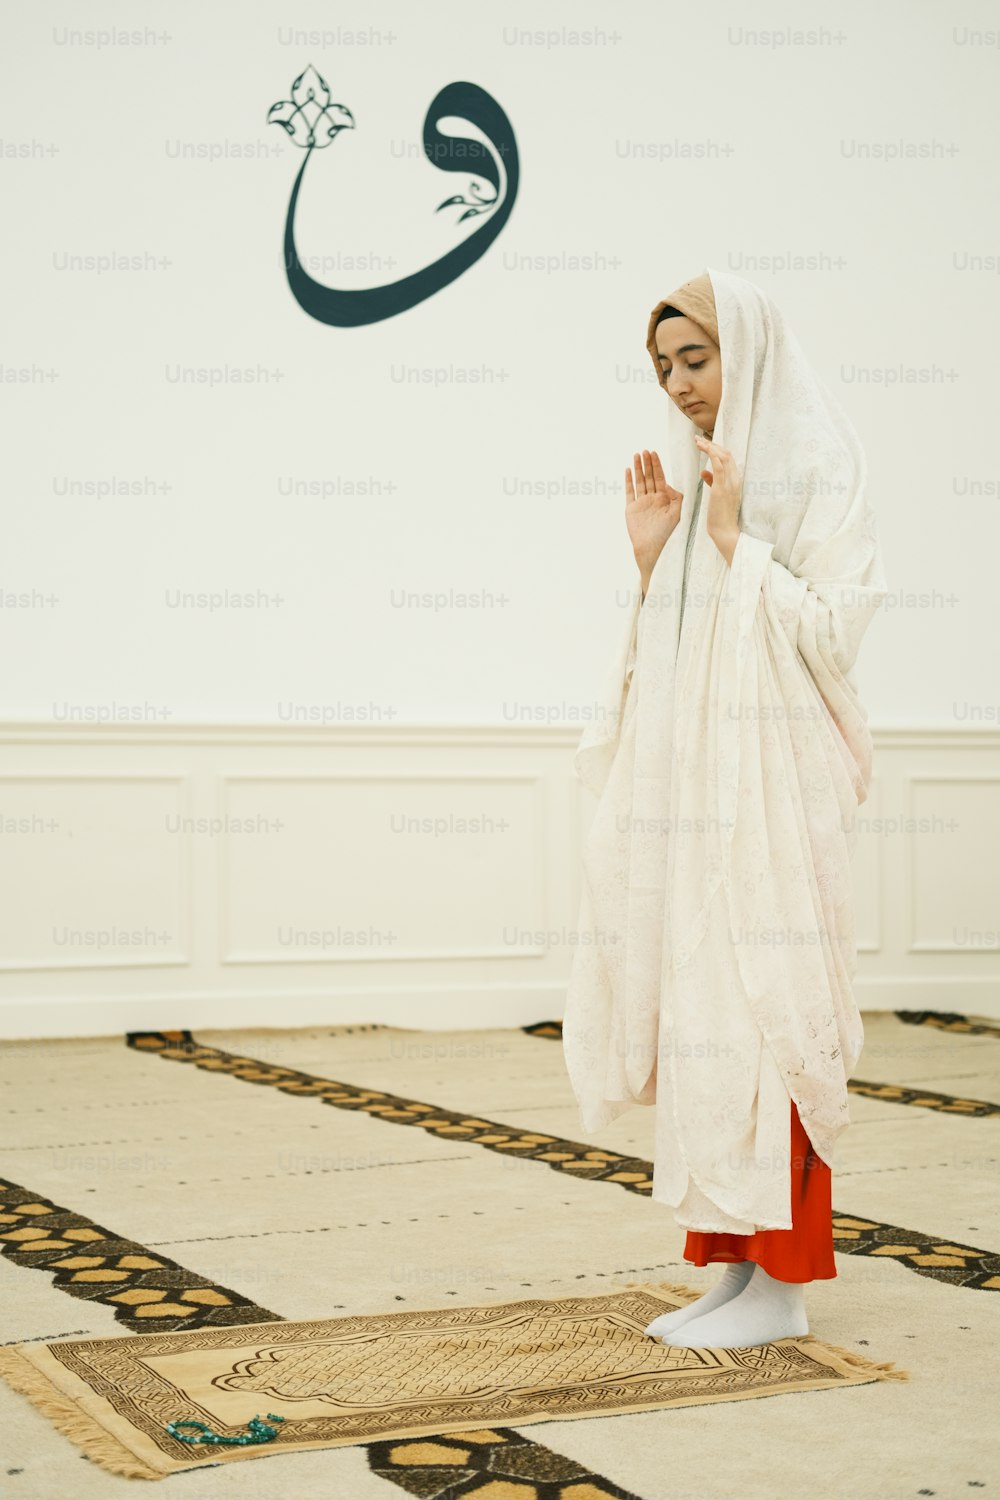 Eine Frau in einem weißen Kleid steht auf einem Teppich